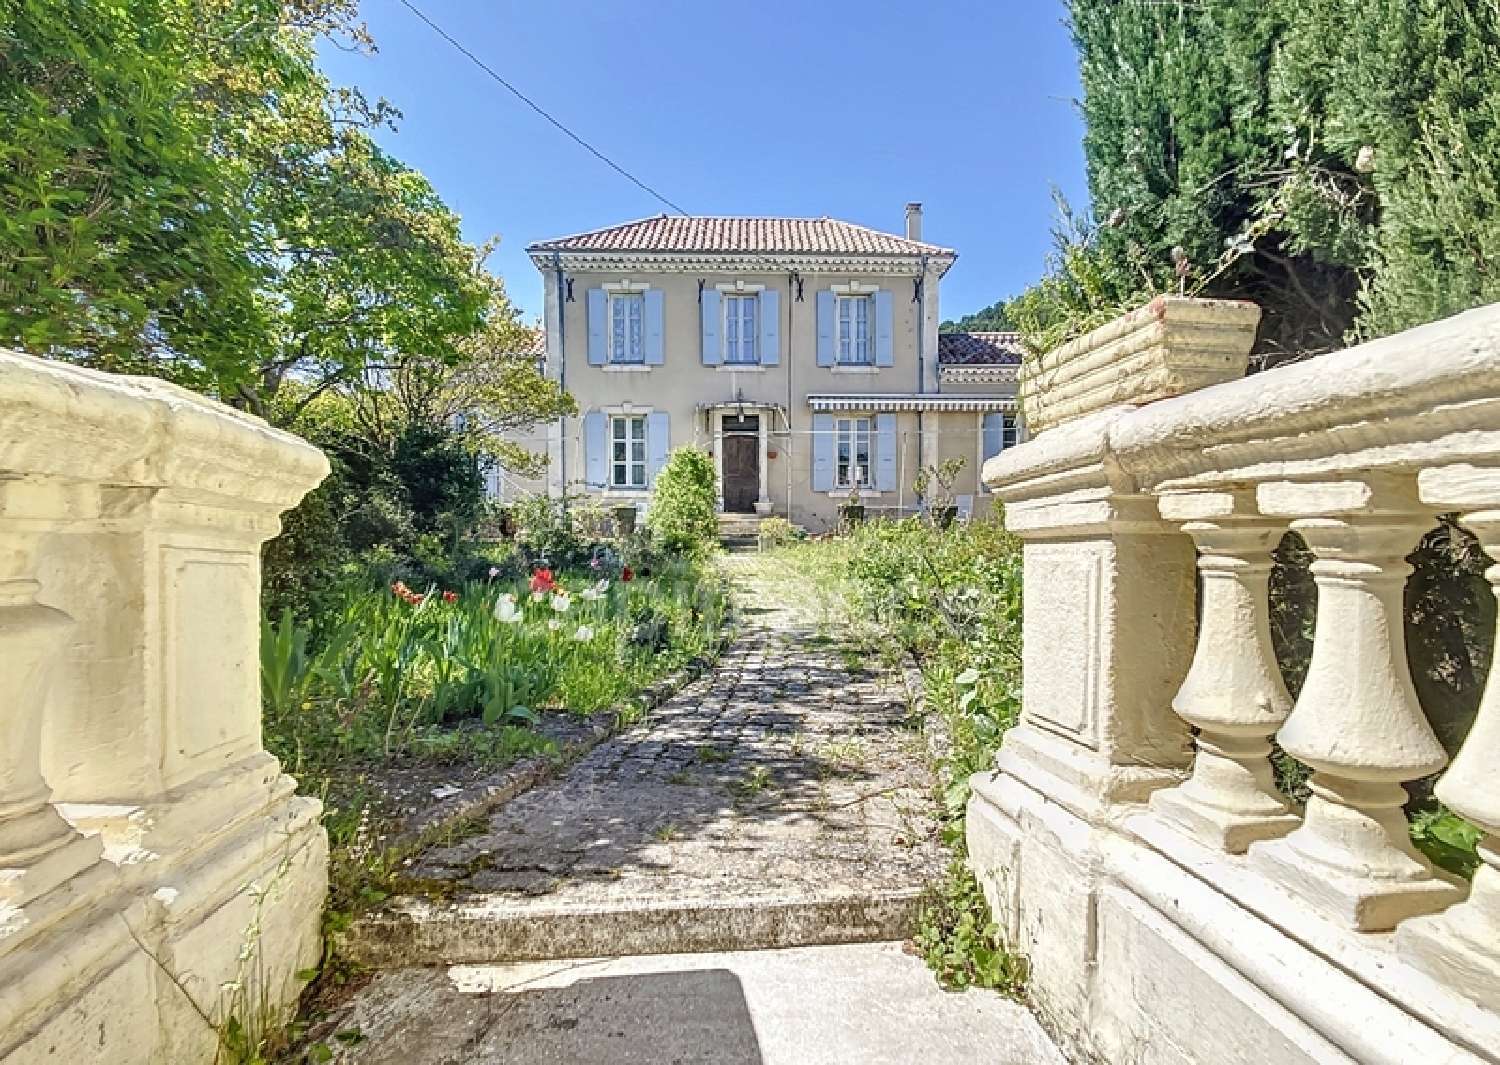  à vendre maison Le Teil Ardèche 1